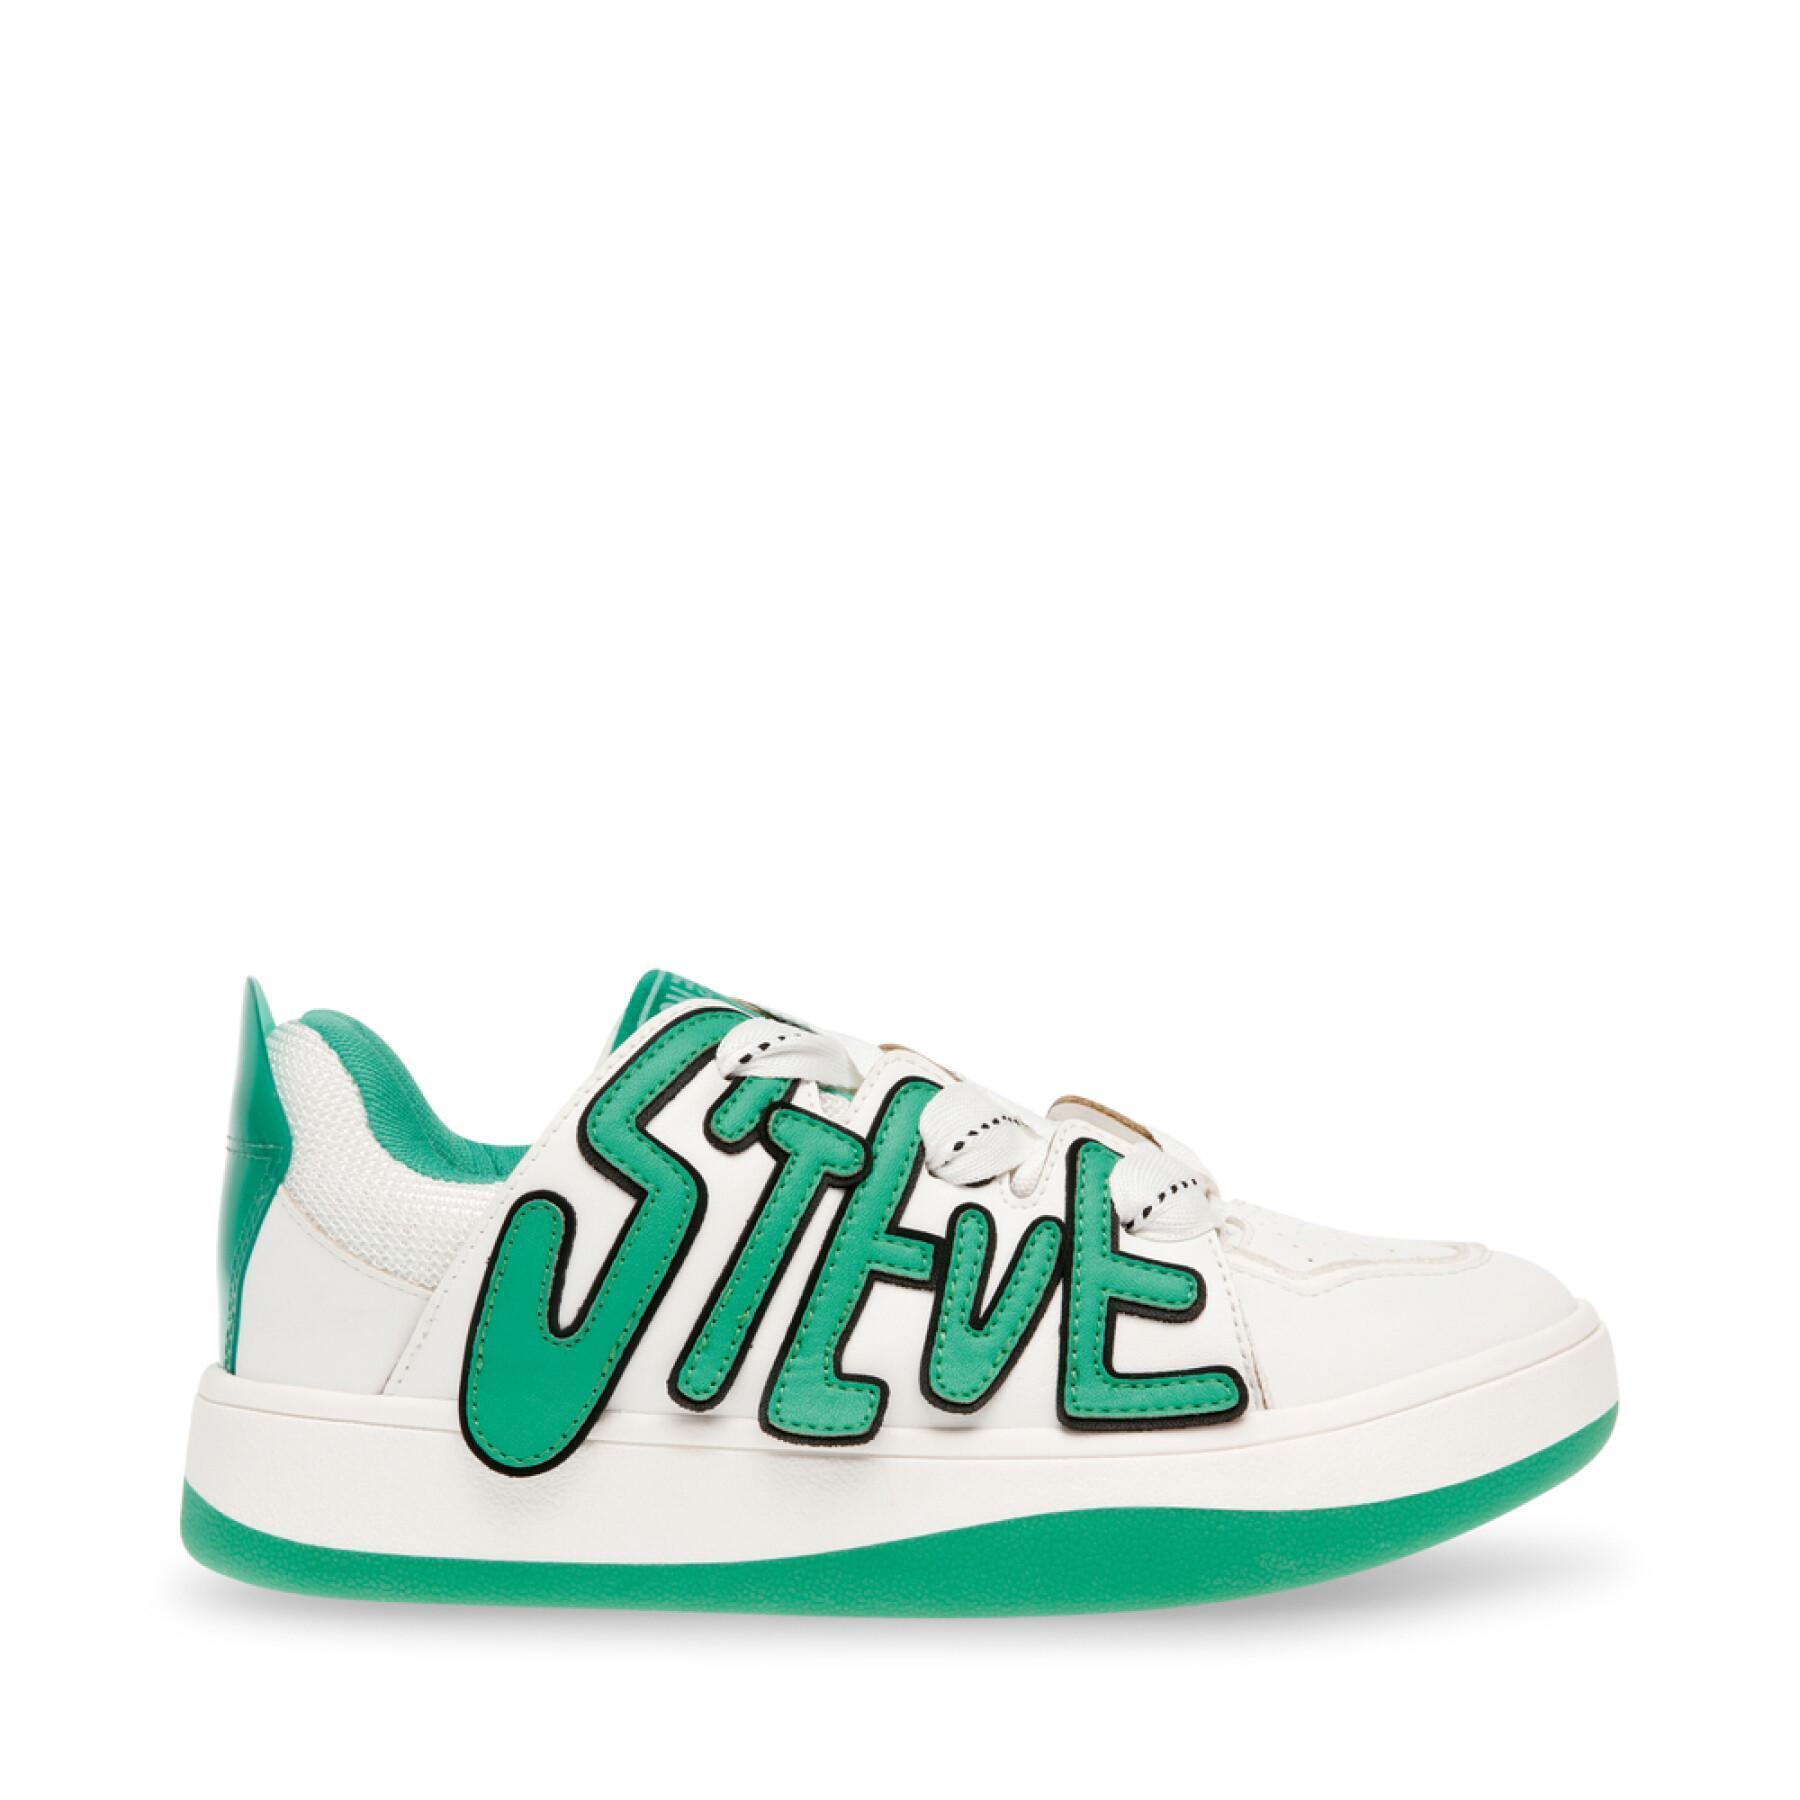 Women's sneakers Steve Madden Retro Lite